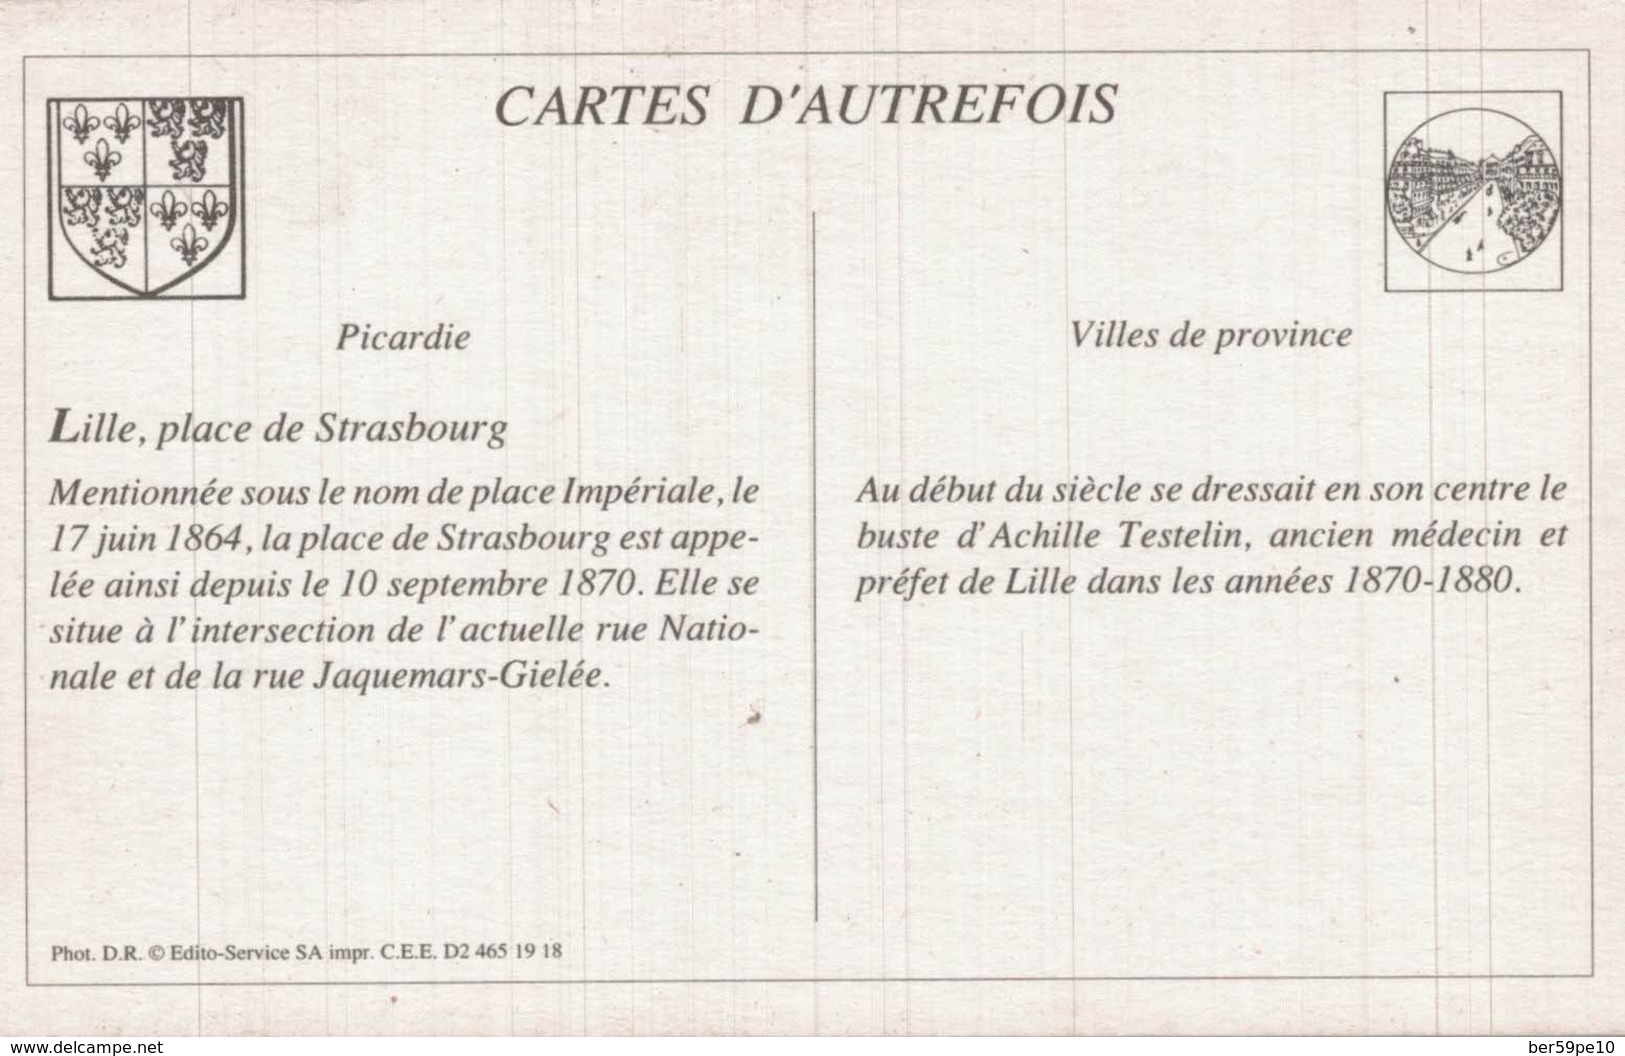 CARTE D'AUTREFOIS VILLES DE PROVINCE  PICARDIE  LILLE PLACE DE STRASBOURG - Picardie